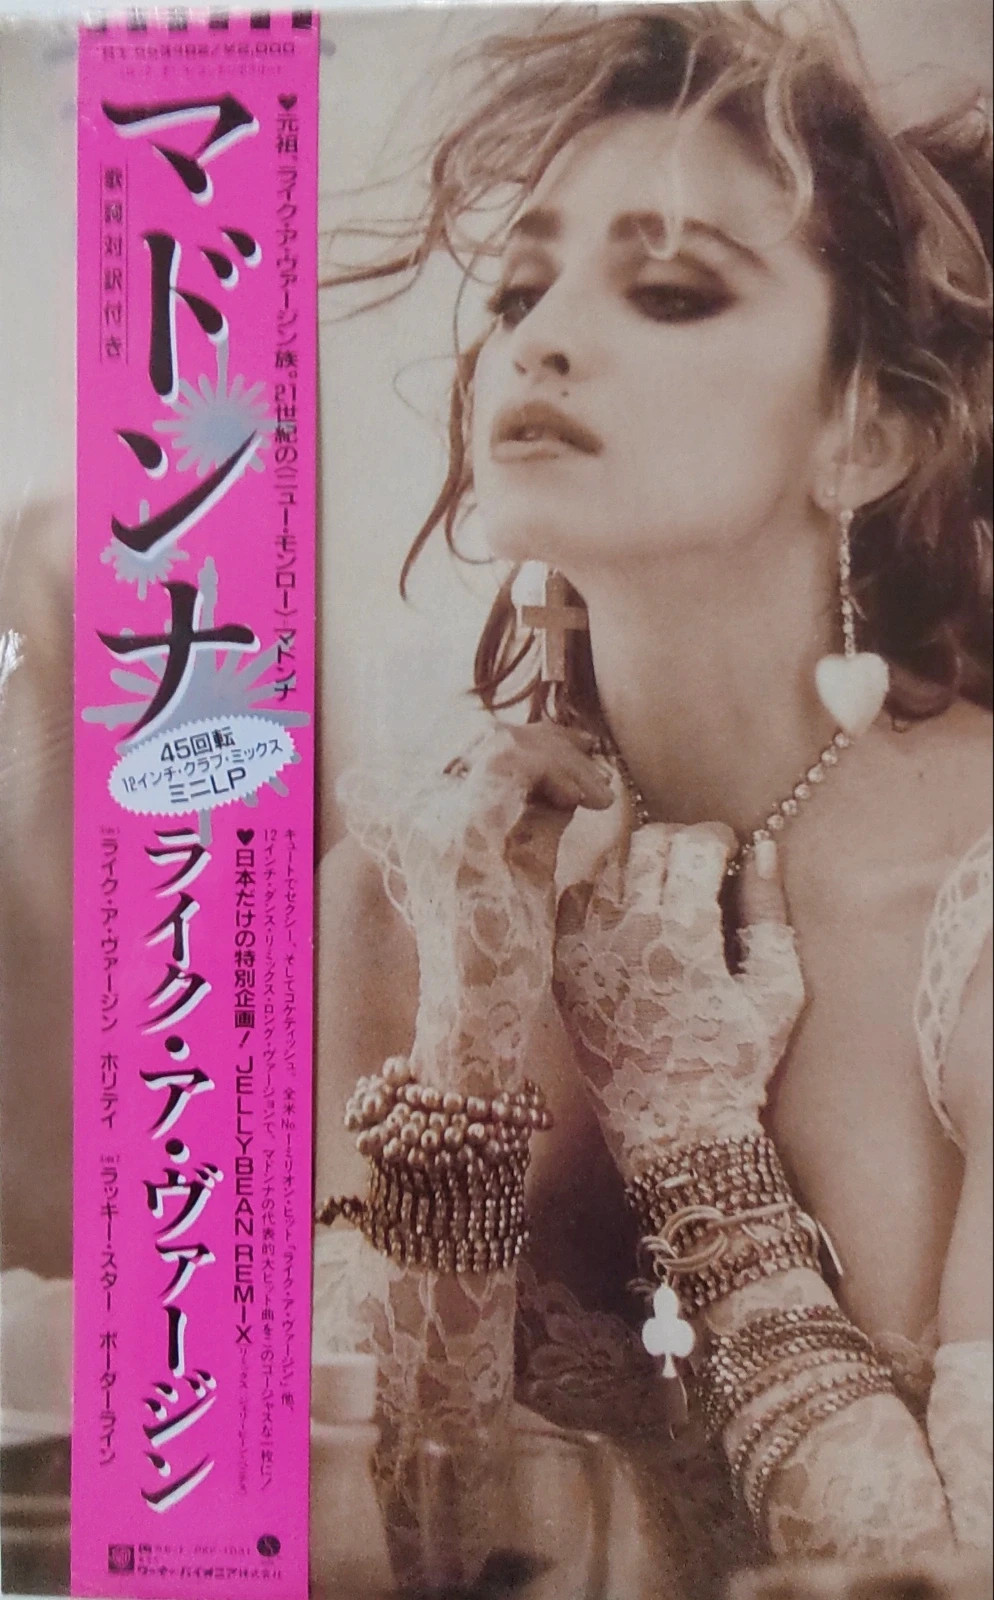 Madonna Vinyle Scellé neuf japon